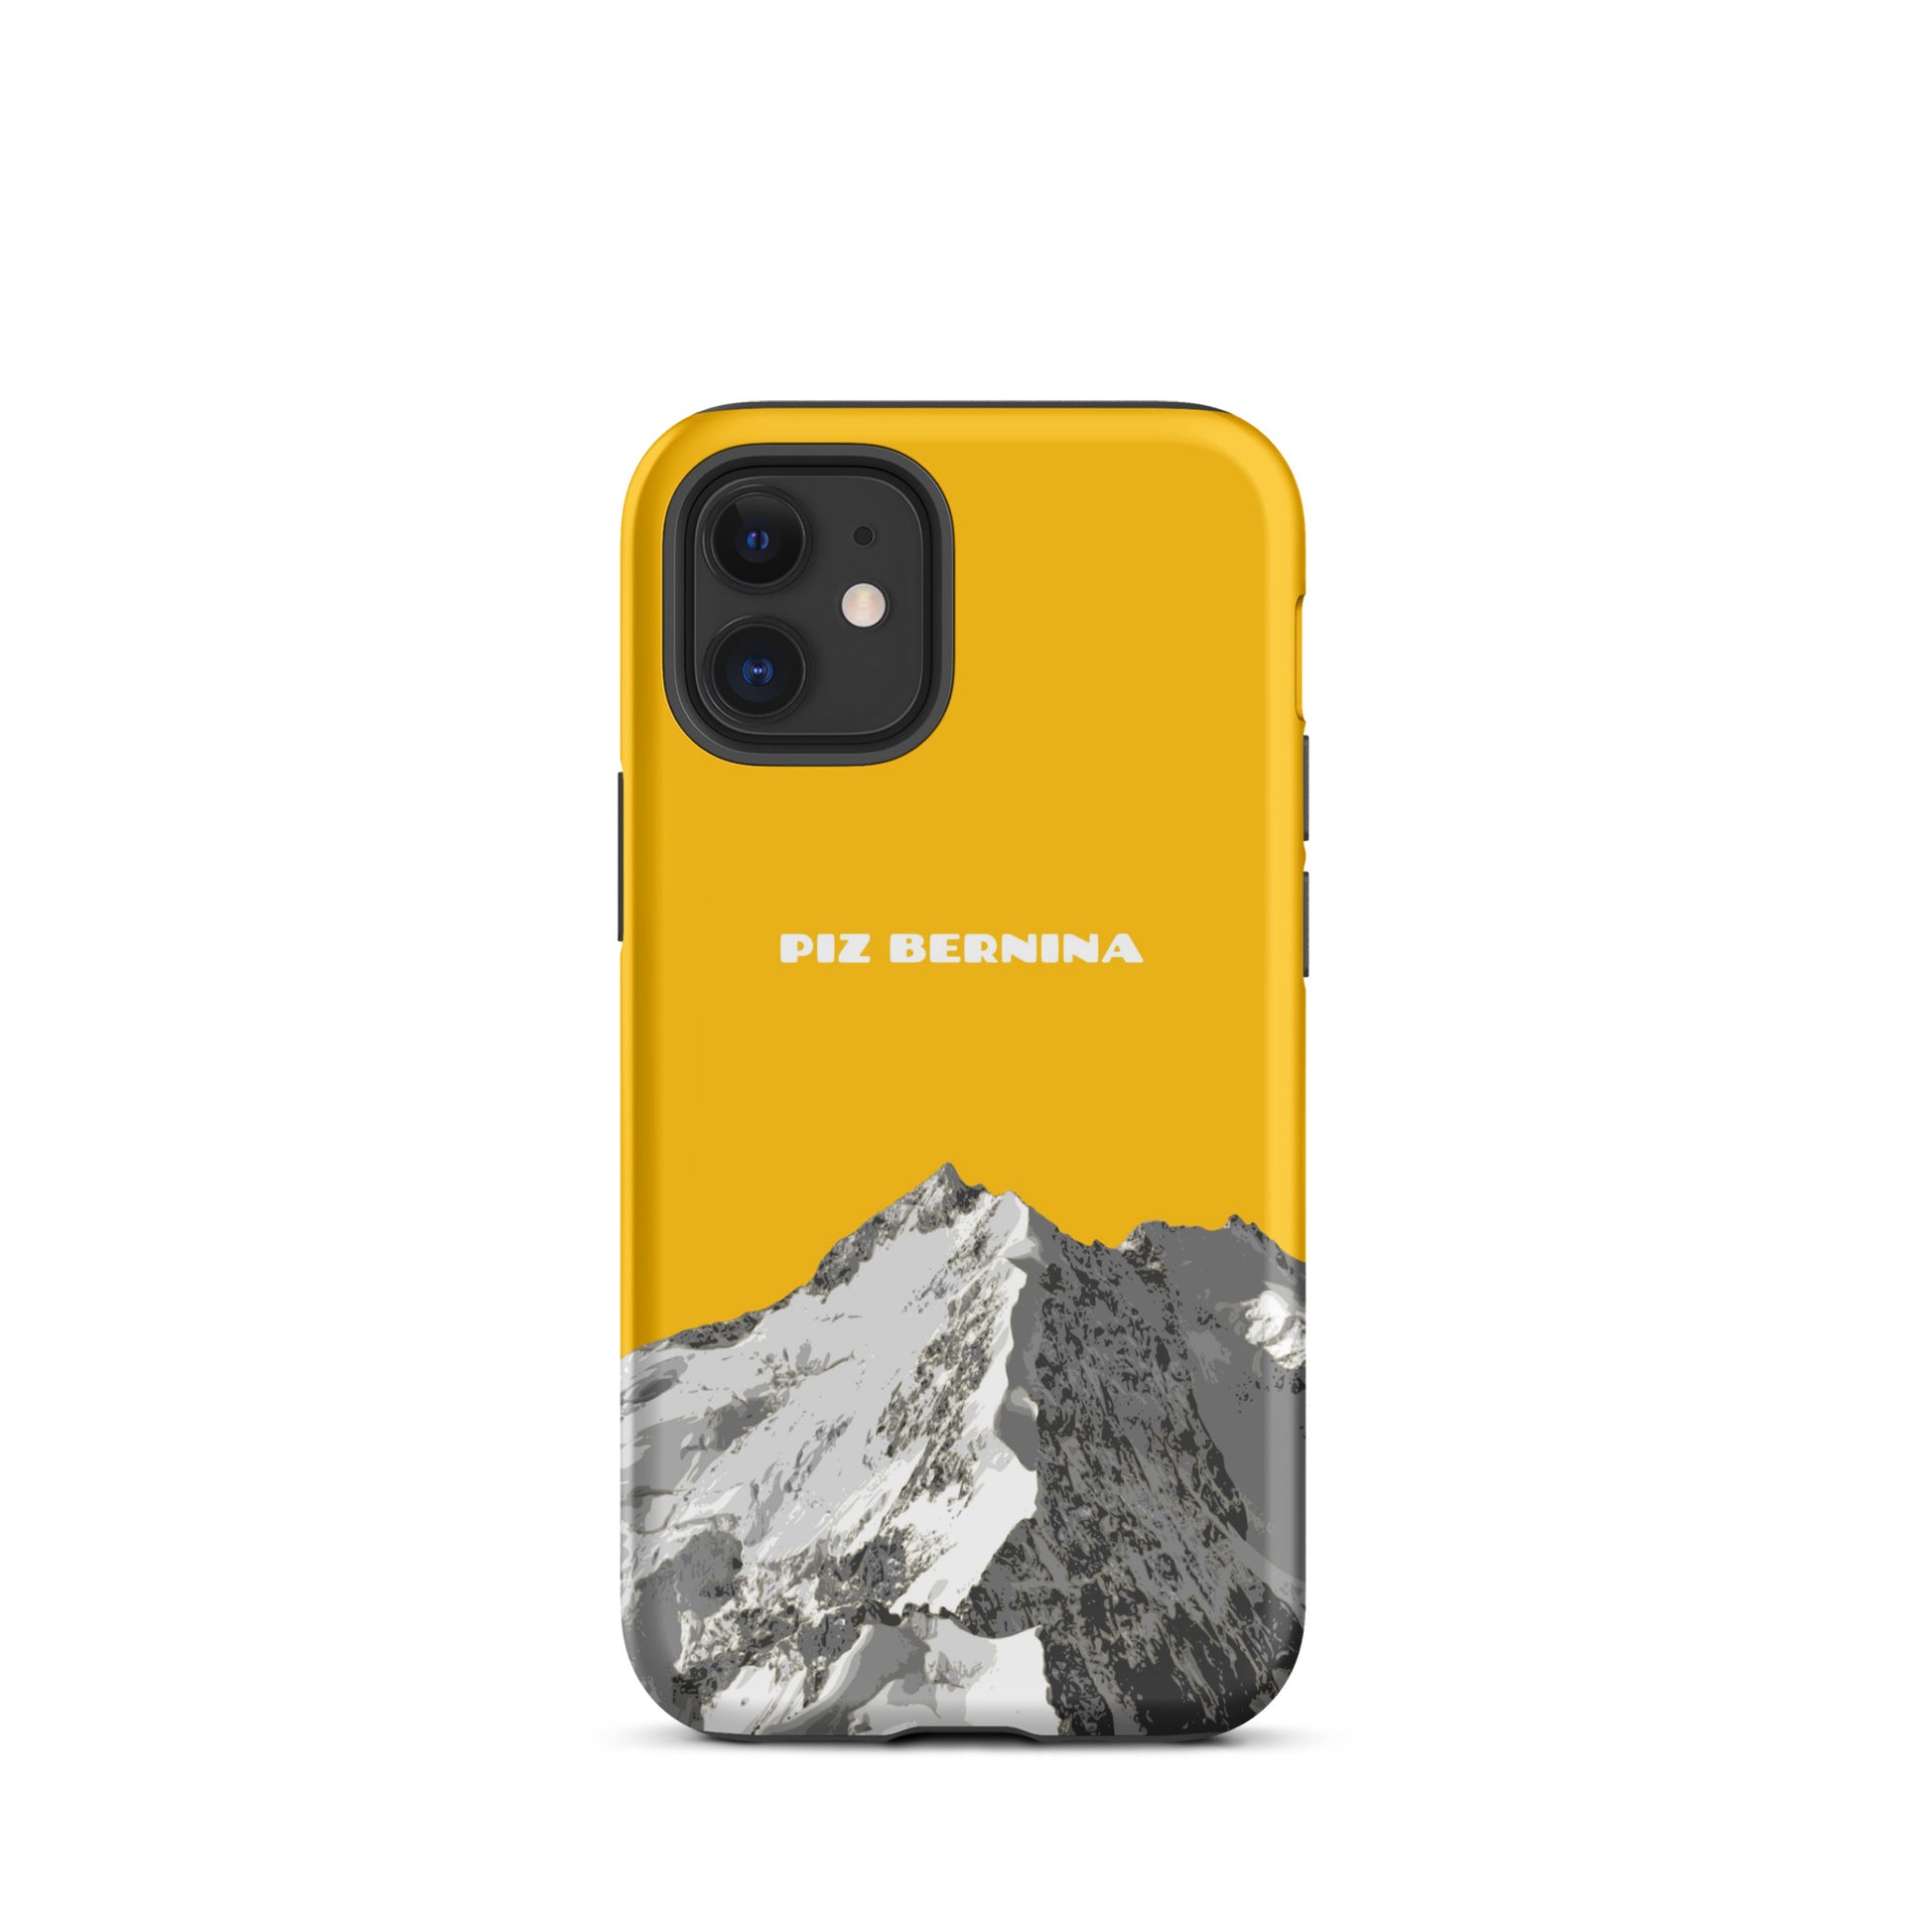 Hülle für das iPhone 12 Mini von Apple in der Farbe Goldgelb, dass den Piz Bernina in Graubünden zeigt.